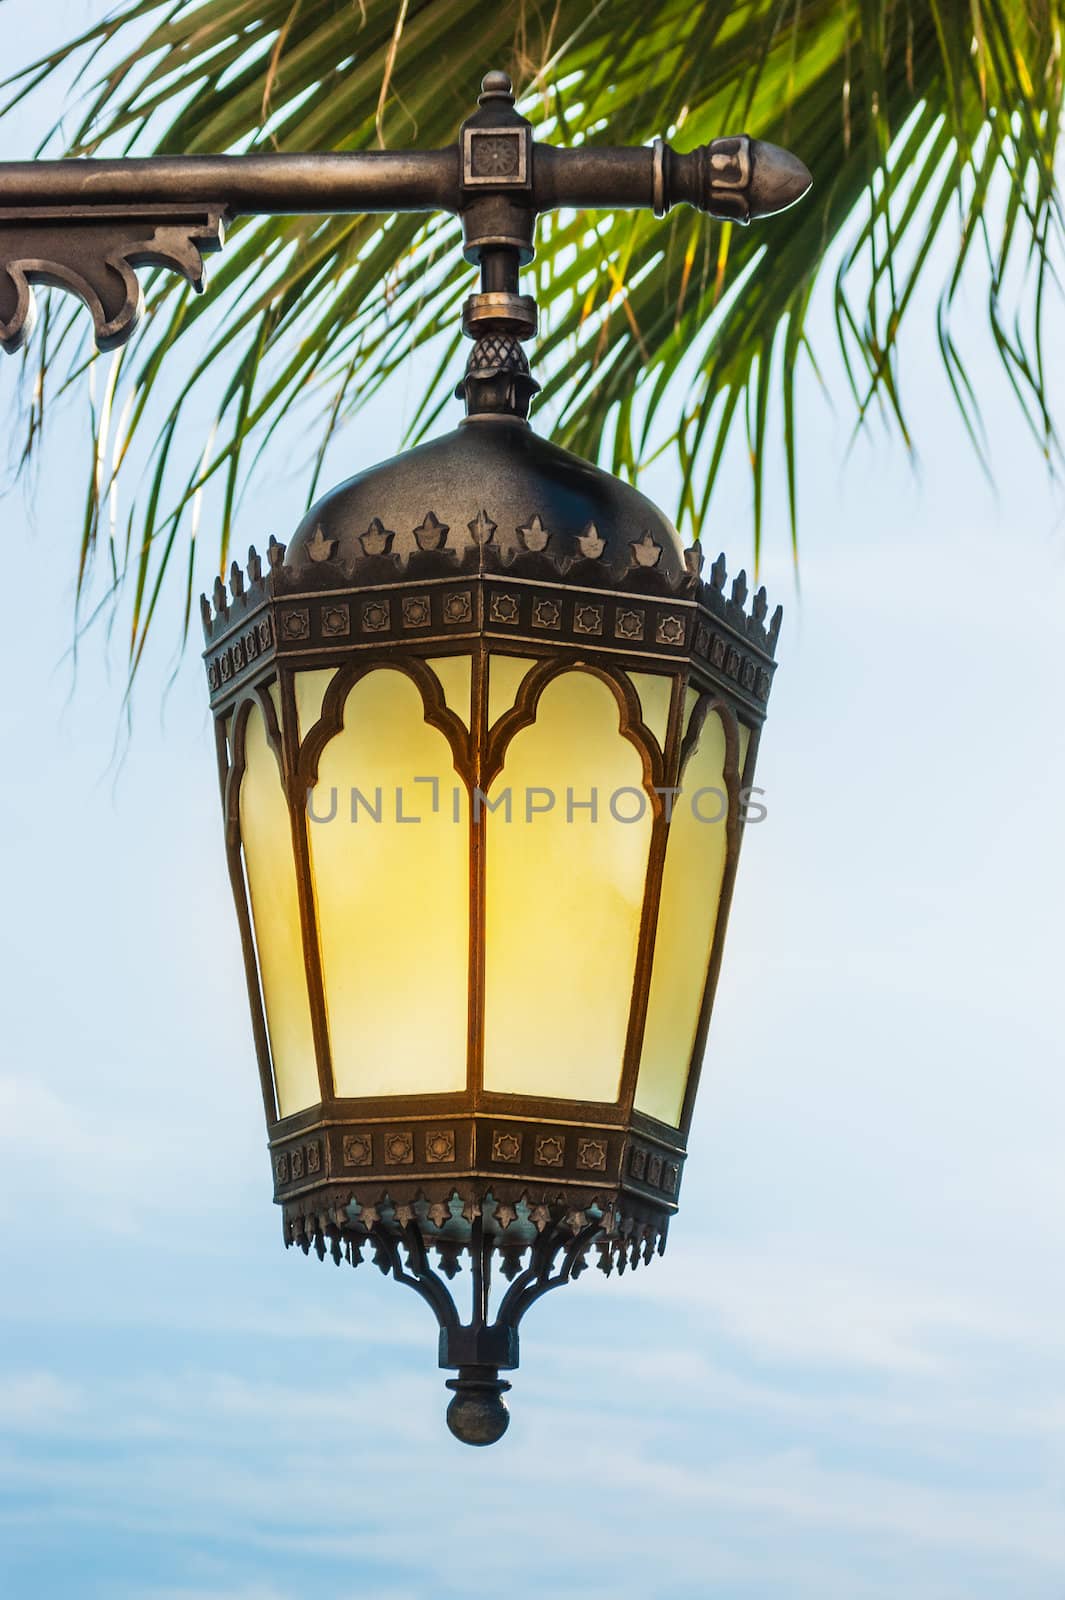 Arab street lanterns in the city of Dubai by oleg_zhukov